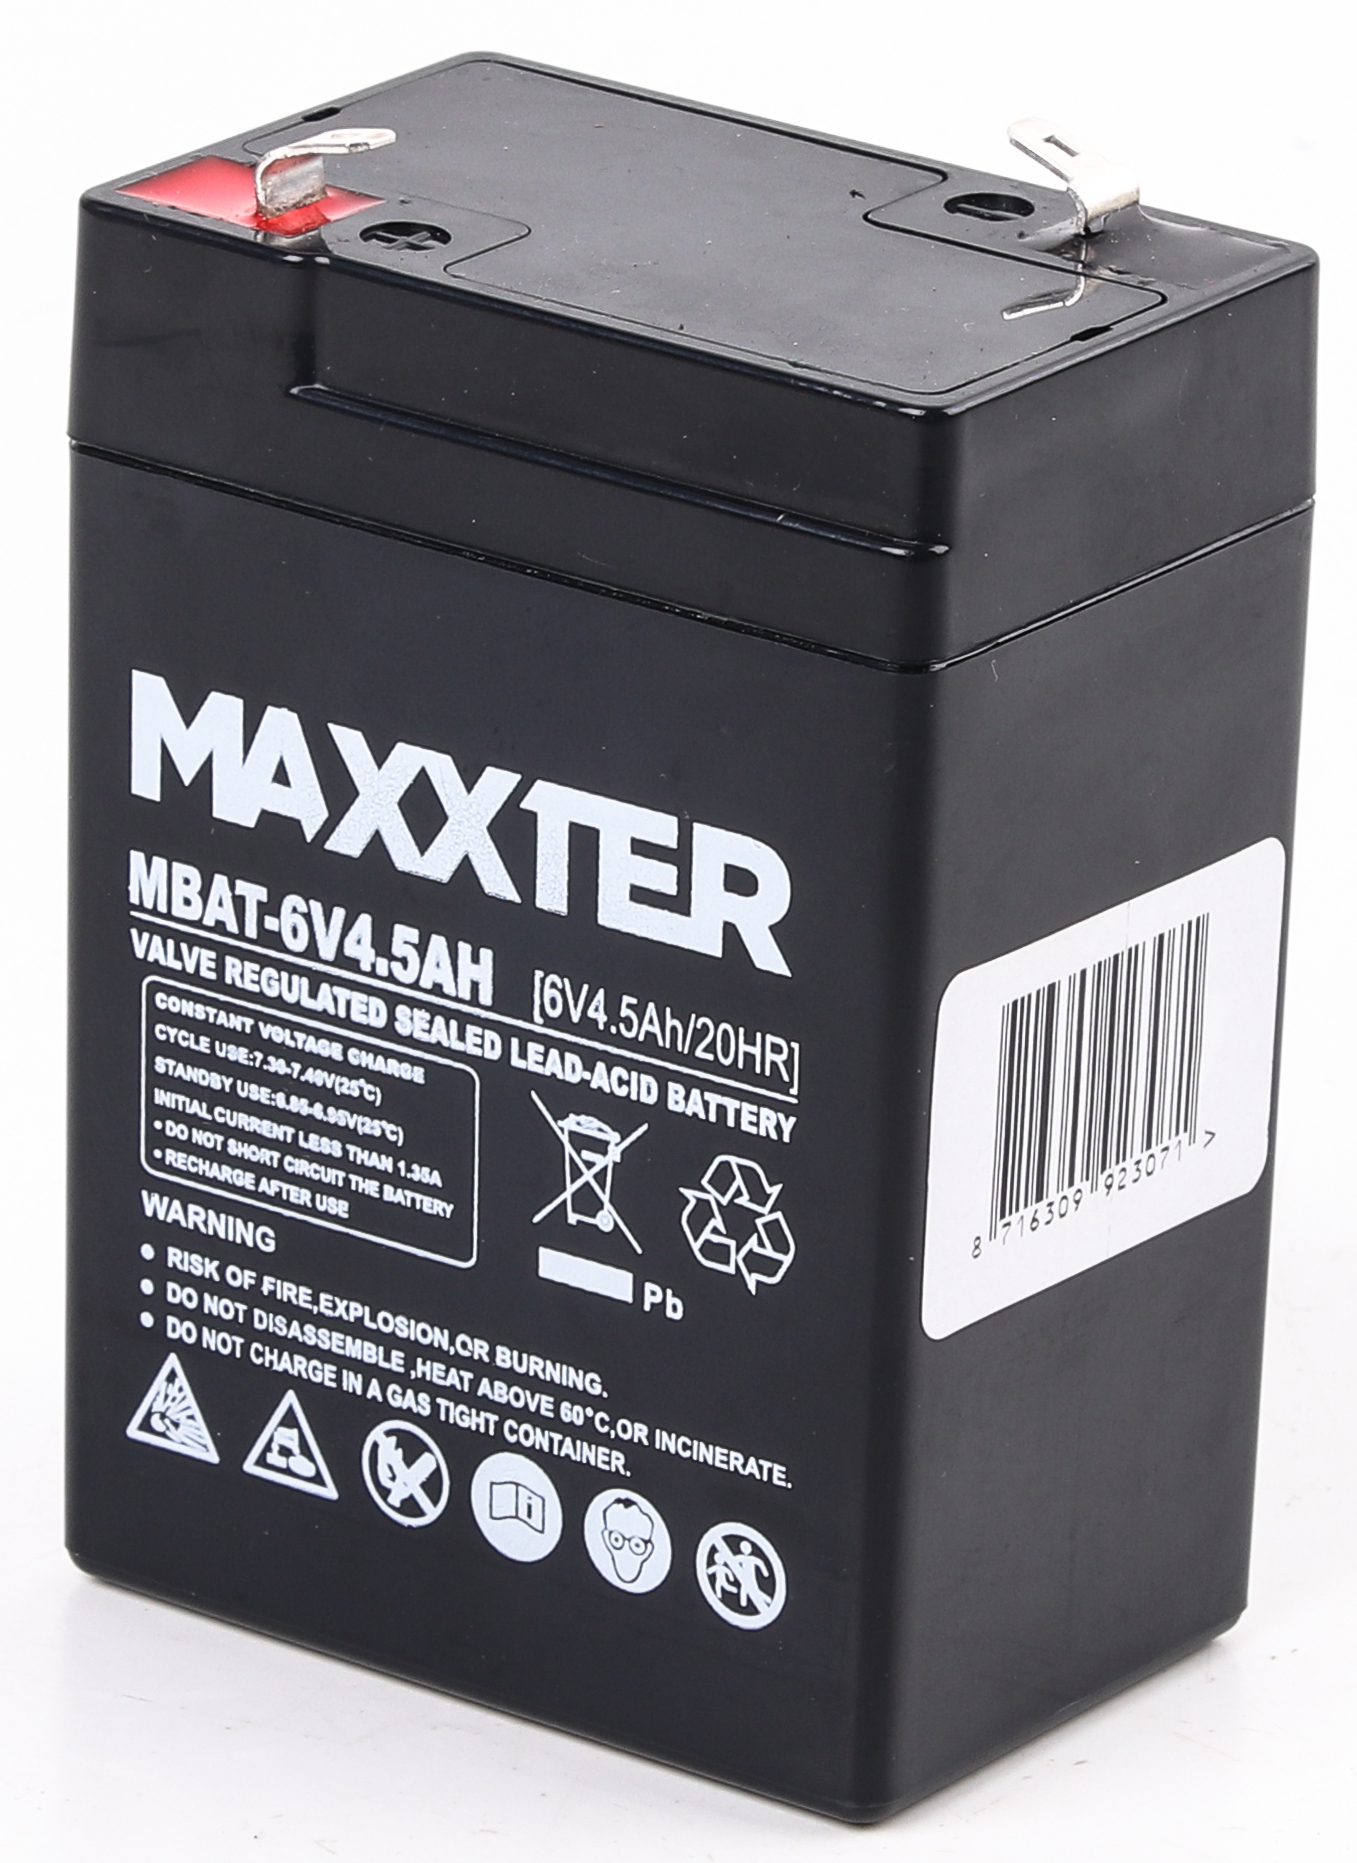 Отзывы аккумулятор Maxxter MBAT-6V4.5AH в Украине